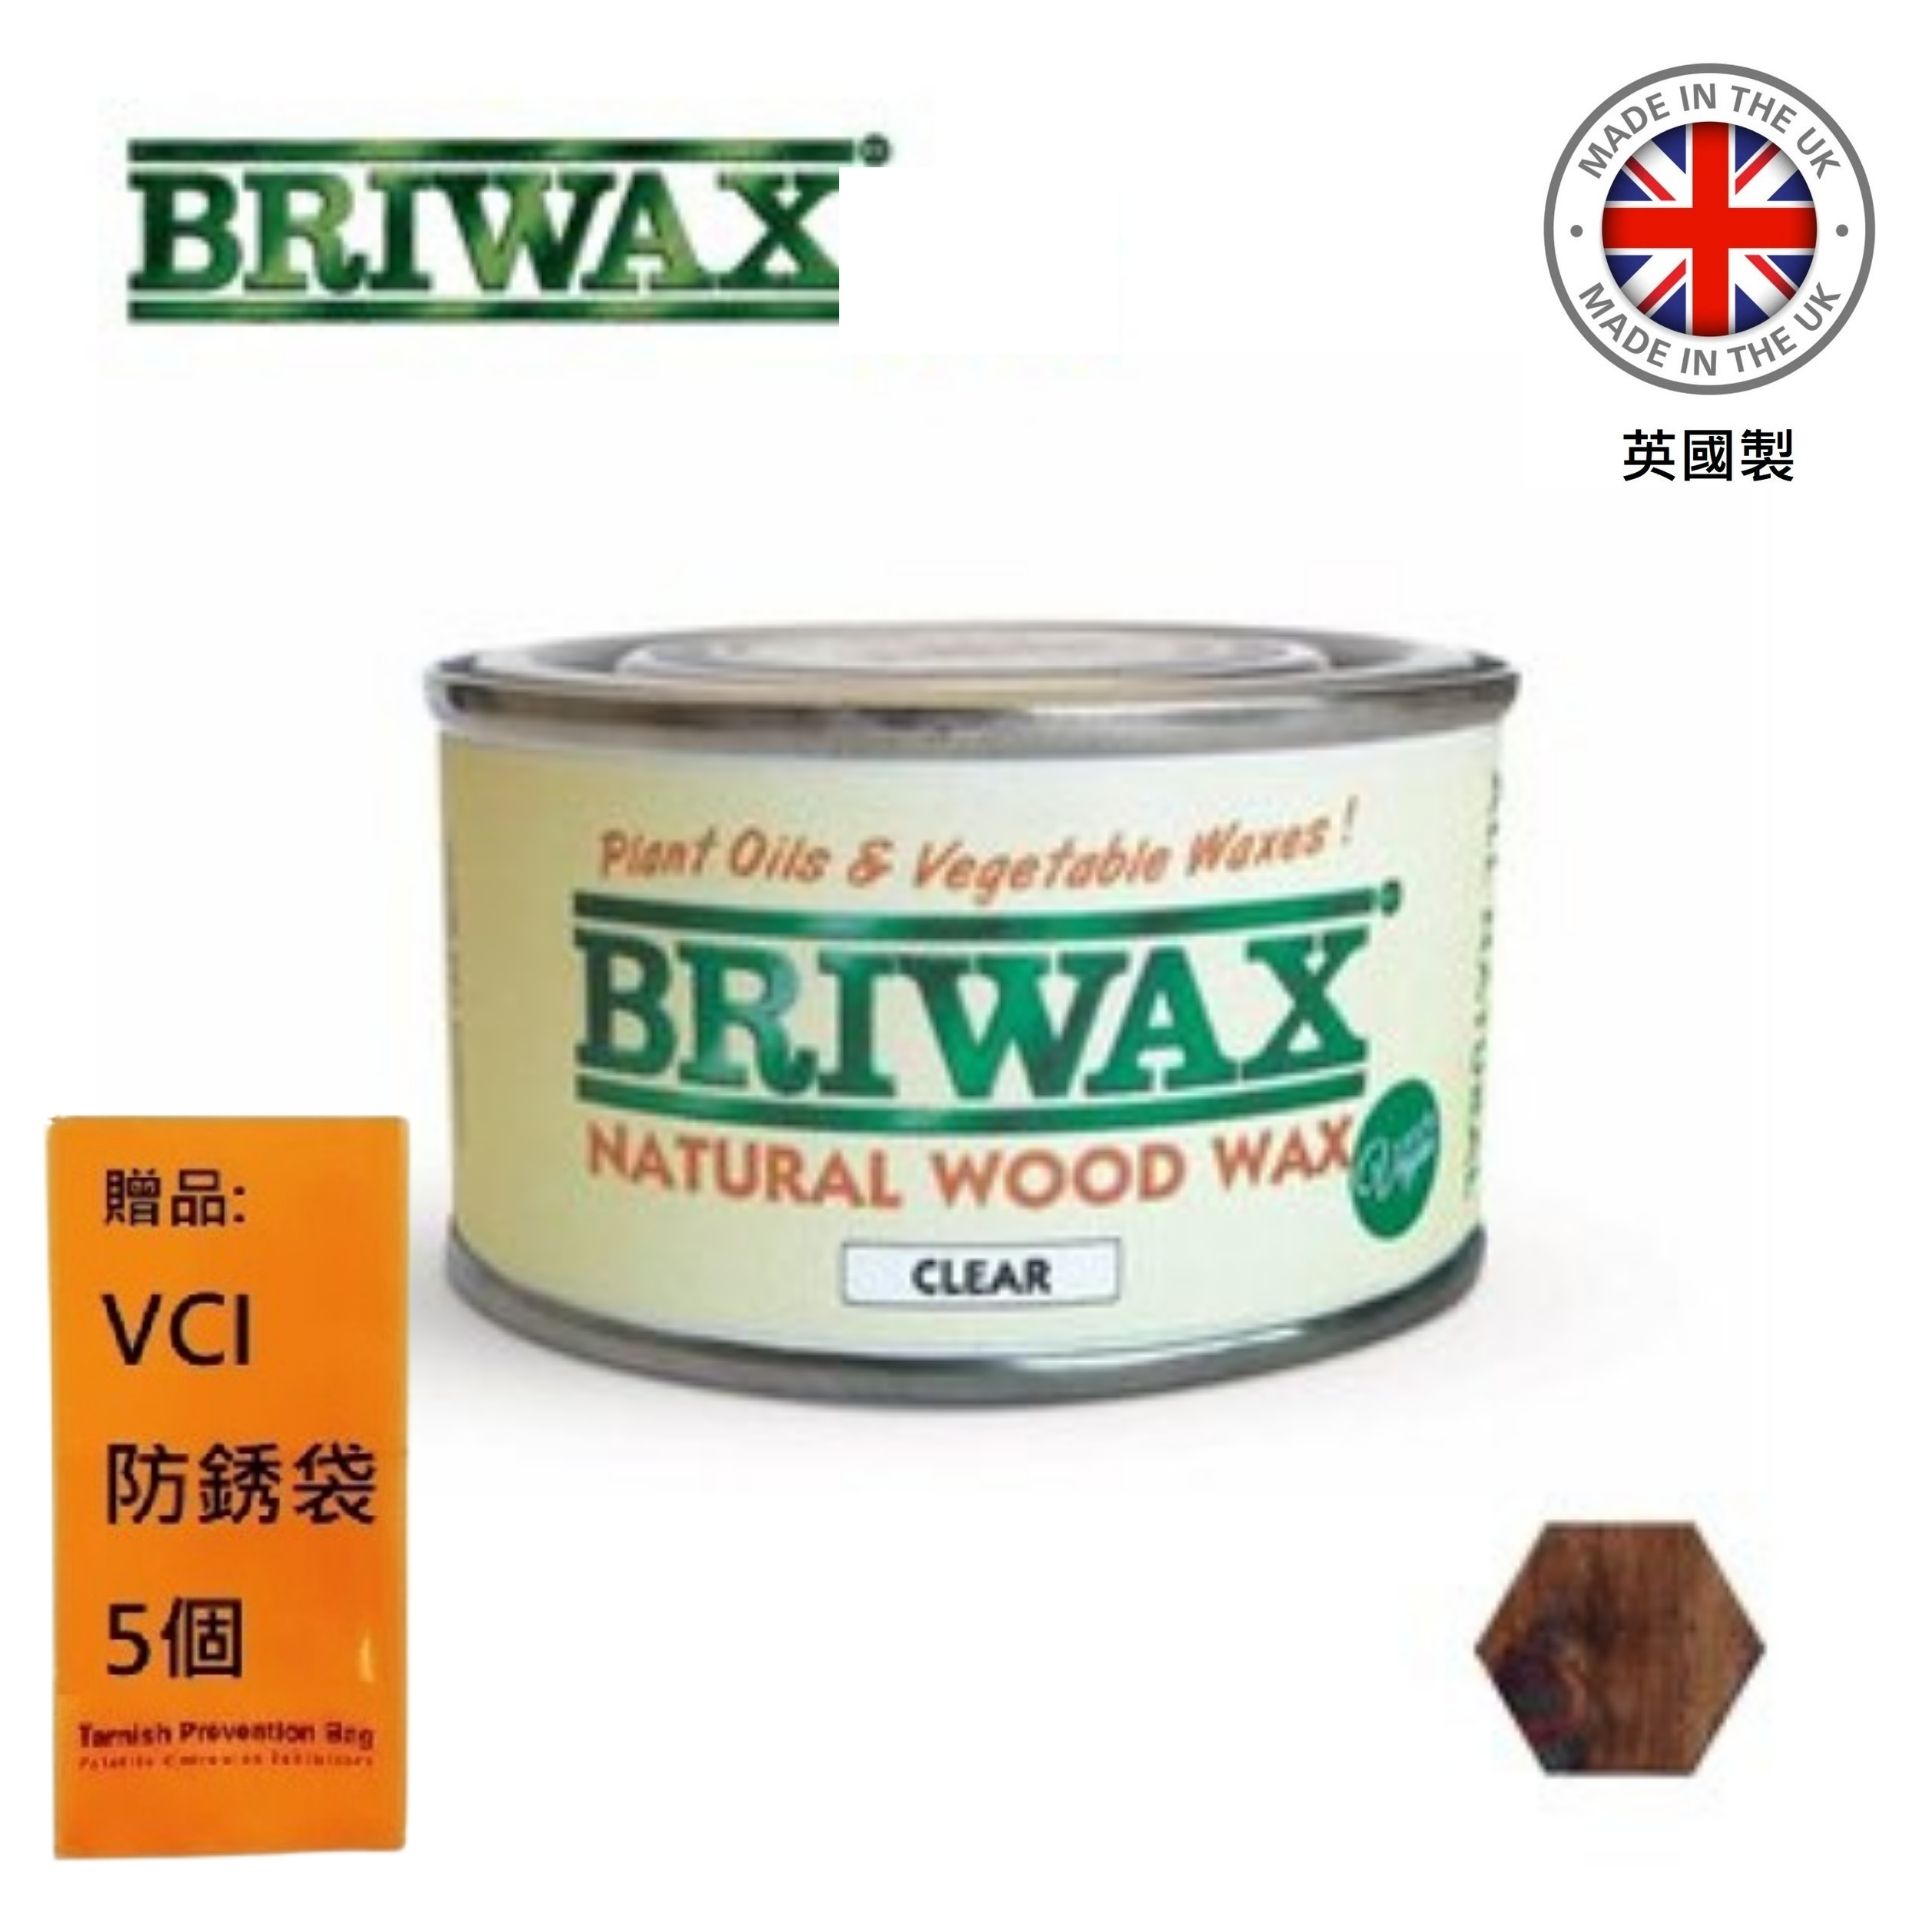 【英國Briwax】天然木製品清潔保養蠟 125g